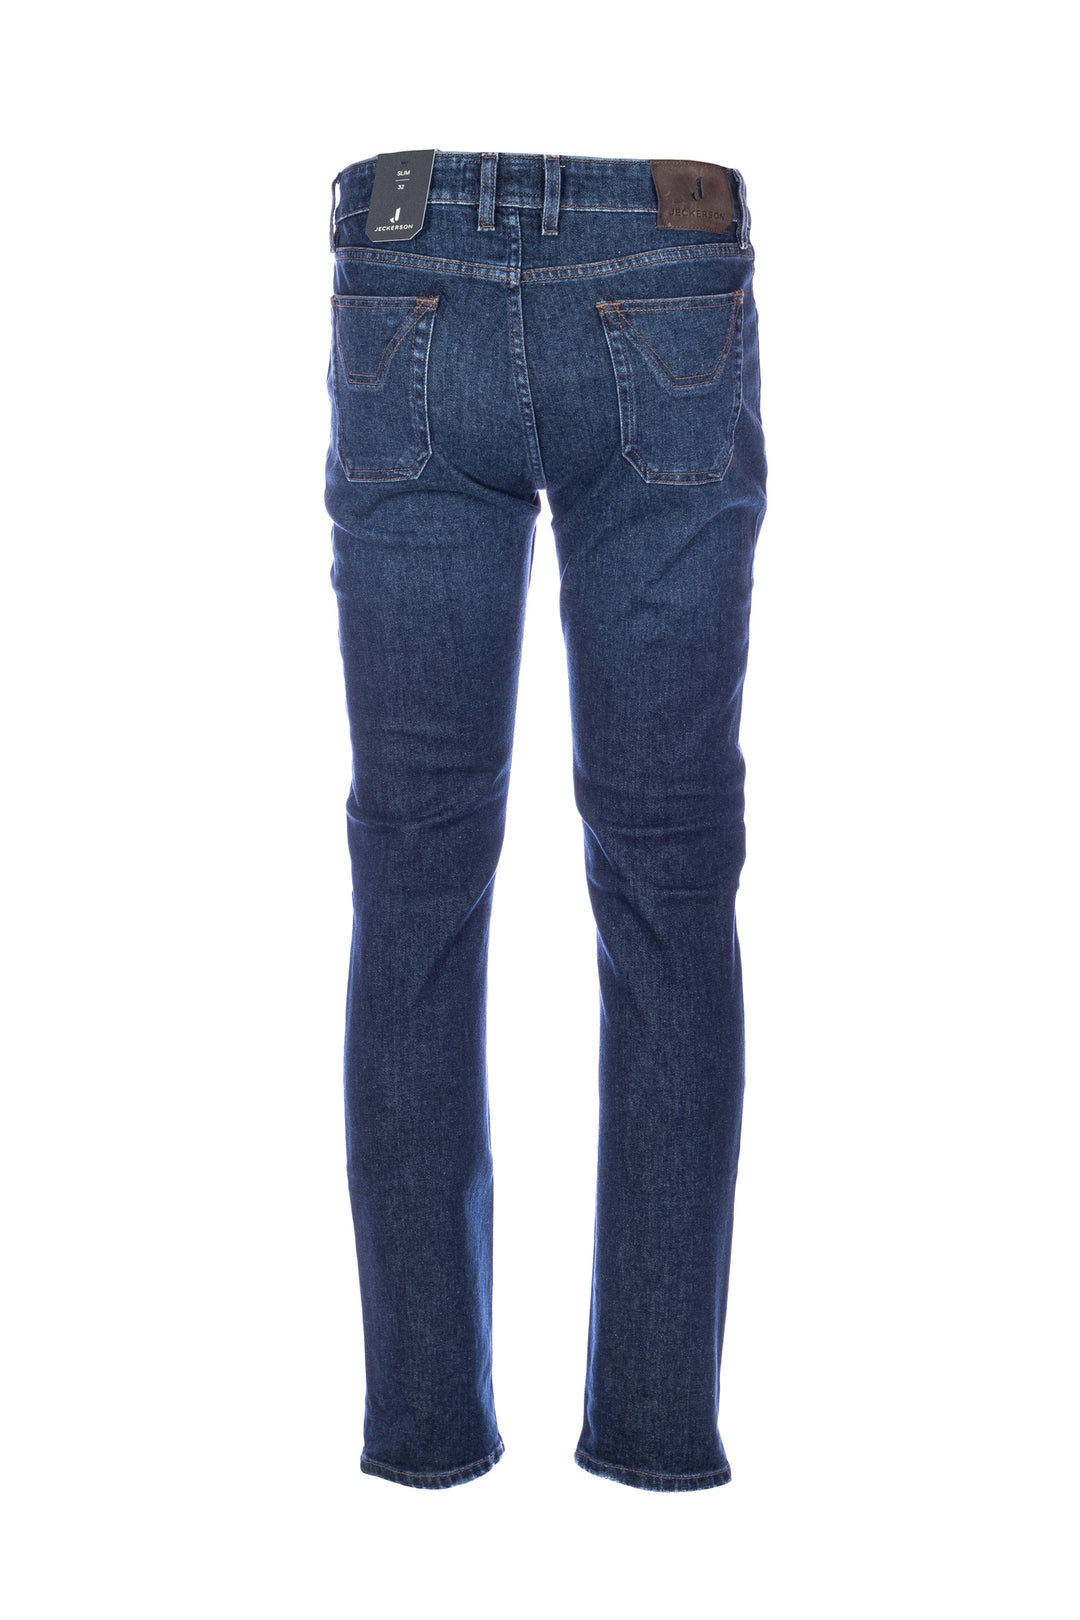 JECKERSON Jeans slim 5 tasche “JOHN” in denim di cotone stretch lavaggio scuro con toppe - Mancinelli 1954